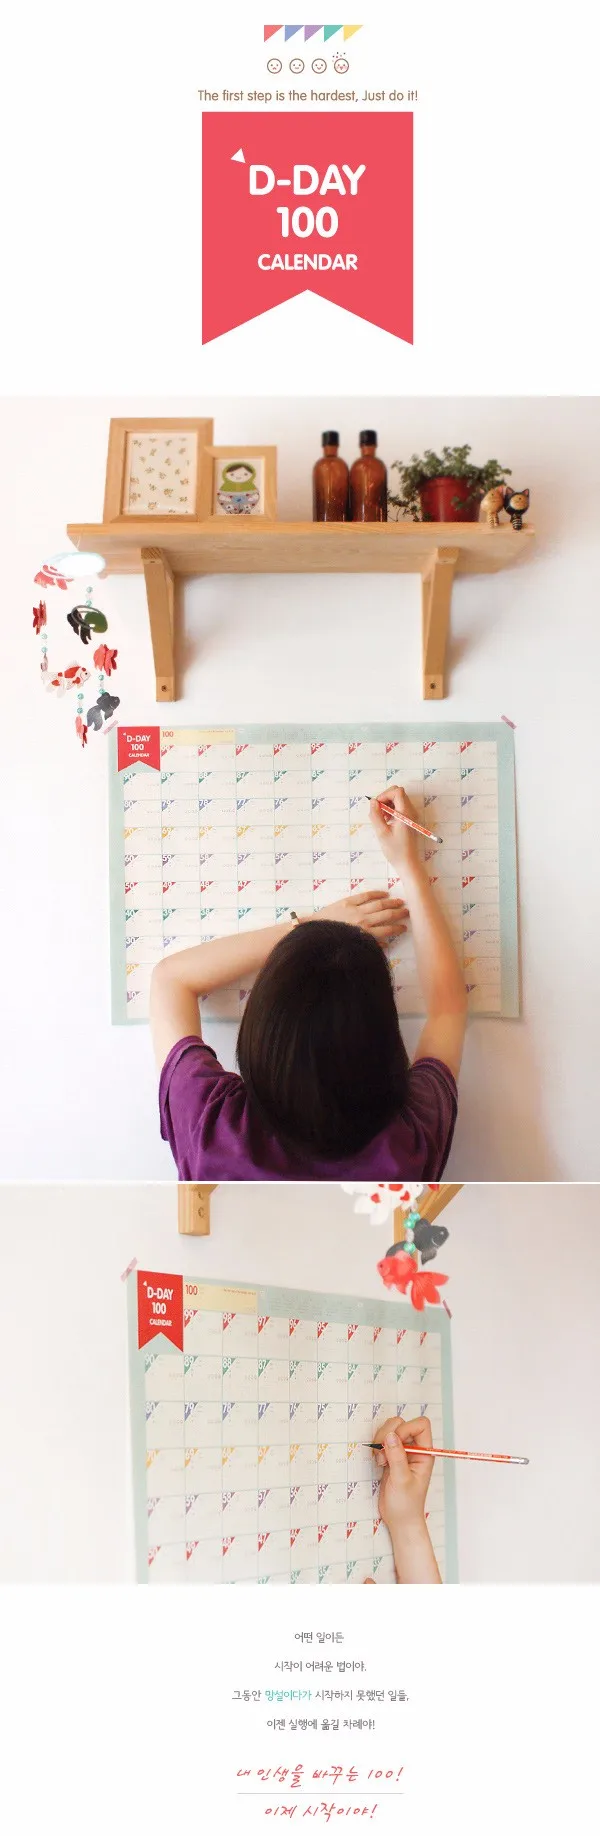 D-day100 Календари дней обратного отсчета Календари График обучения периодические планировщик настольный подарок для детей изучению